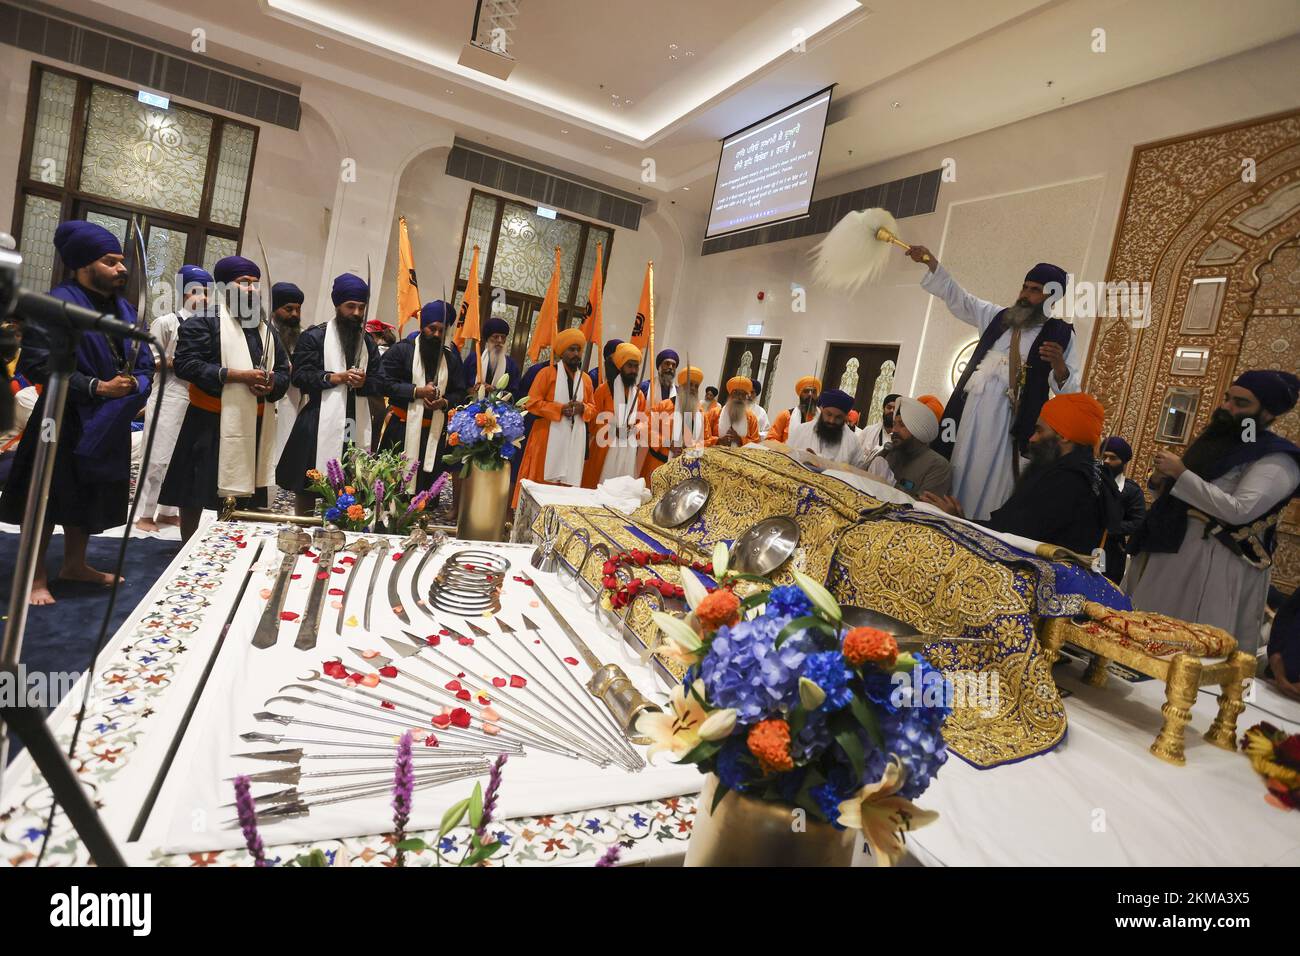 Gli adoratori partecipano alla cerimonia del Guru Granth Sahib al tempio Sikh, recentemente rinnovato, su Stubbs Road a Wanchai.06NOV22 SCMP / Jonathan Wong Foto Stock